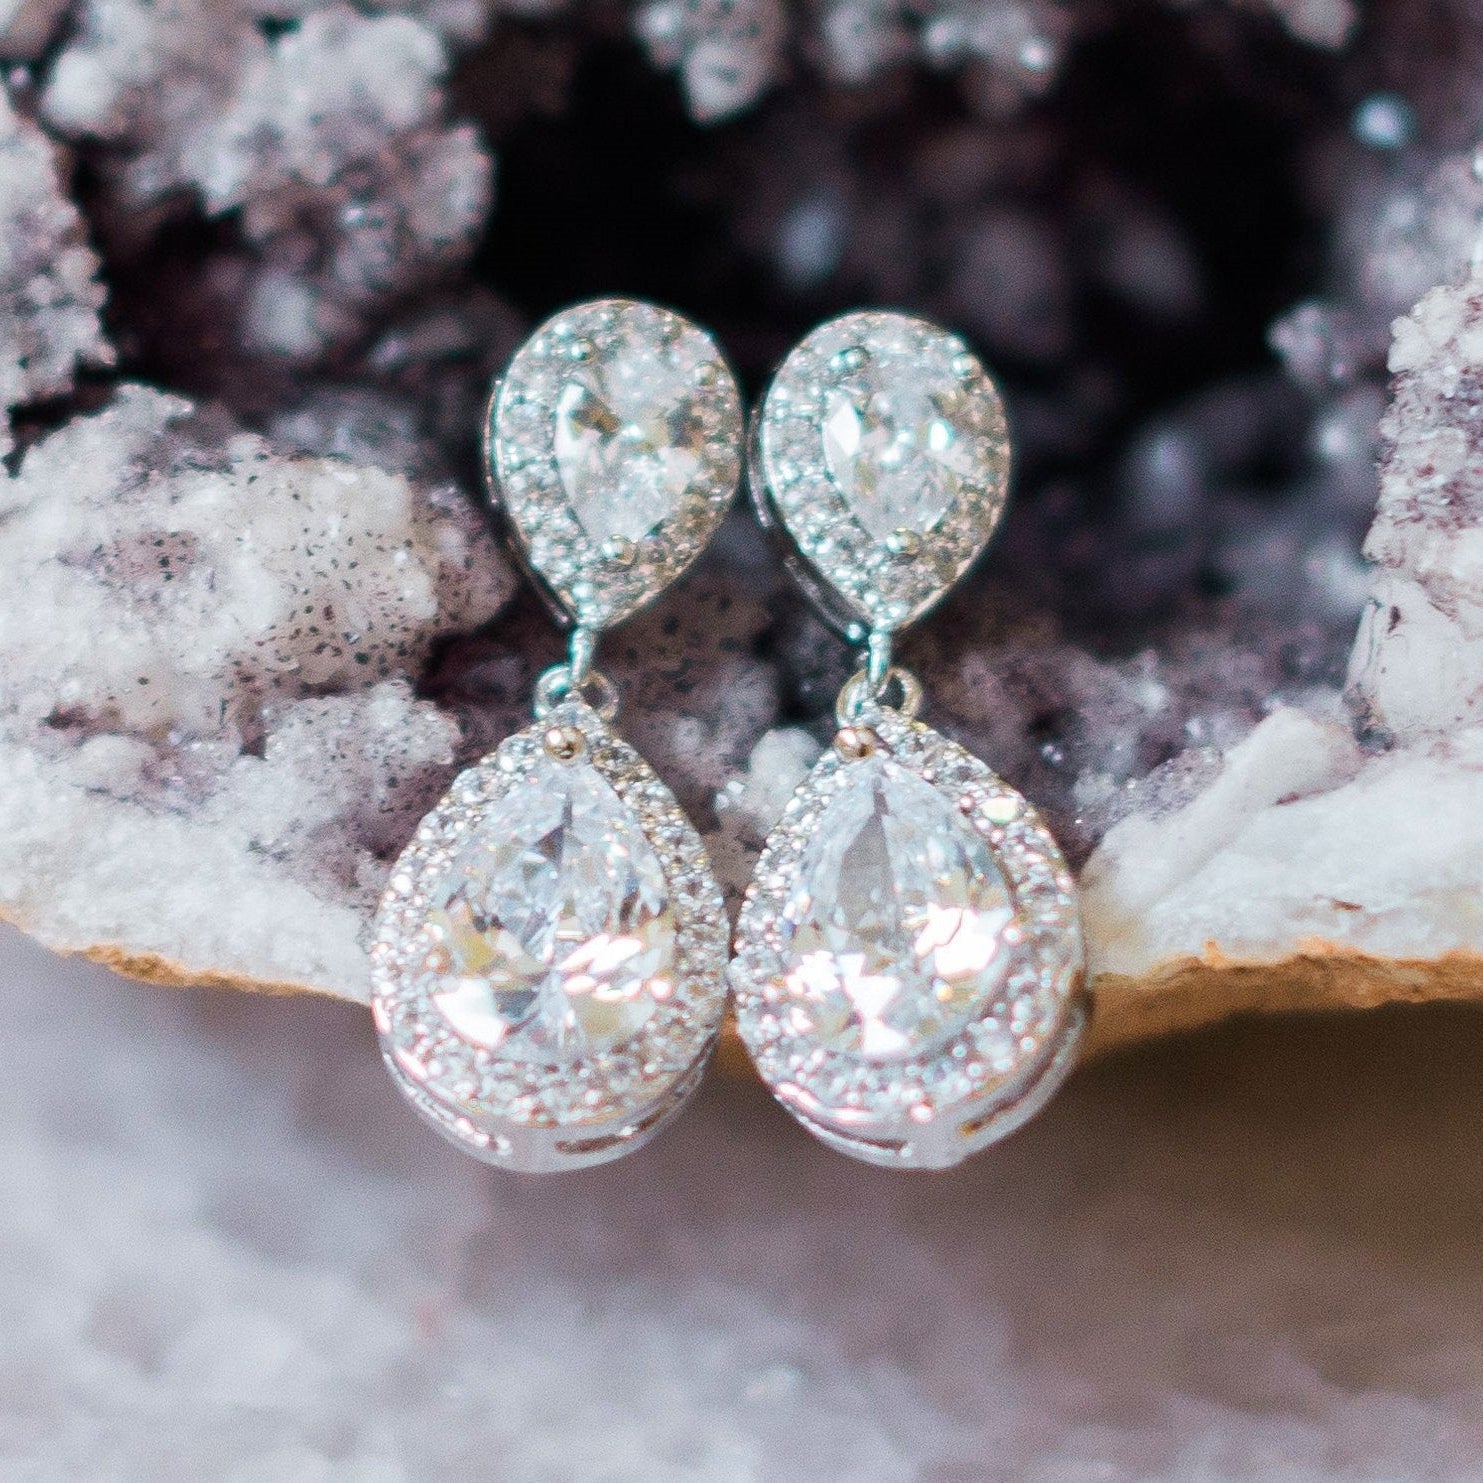 Jules Bridal - Jodie, Silver Teardrop Crystal Jewellery Set